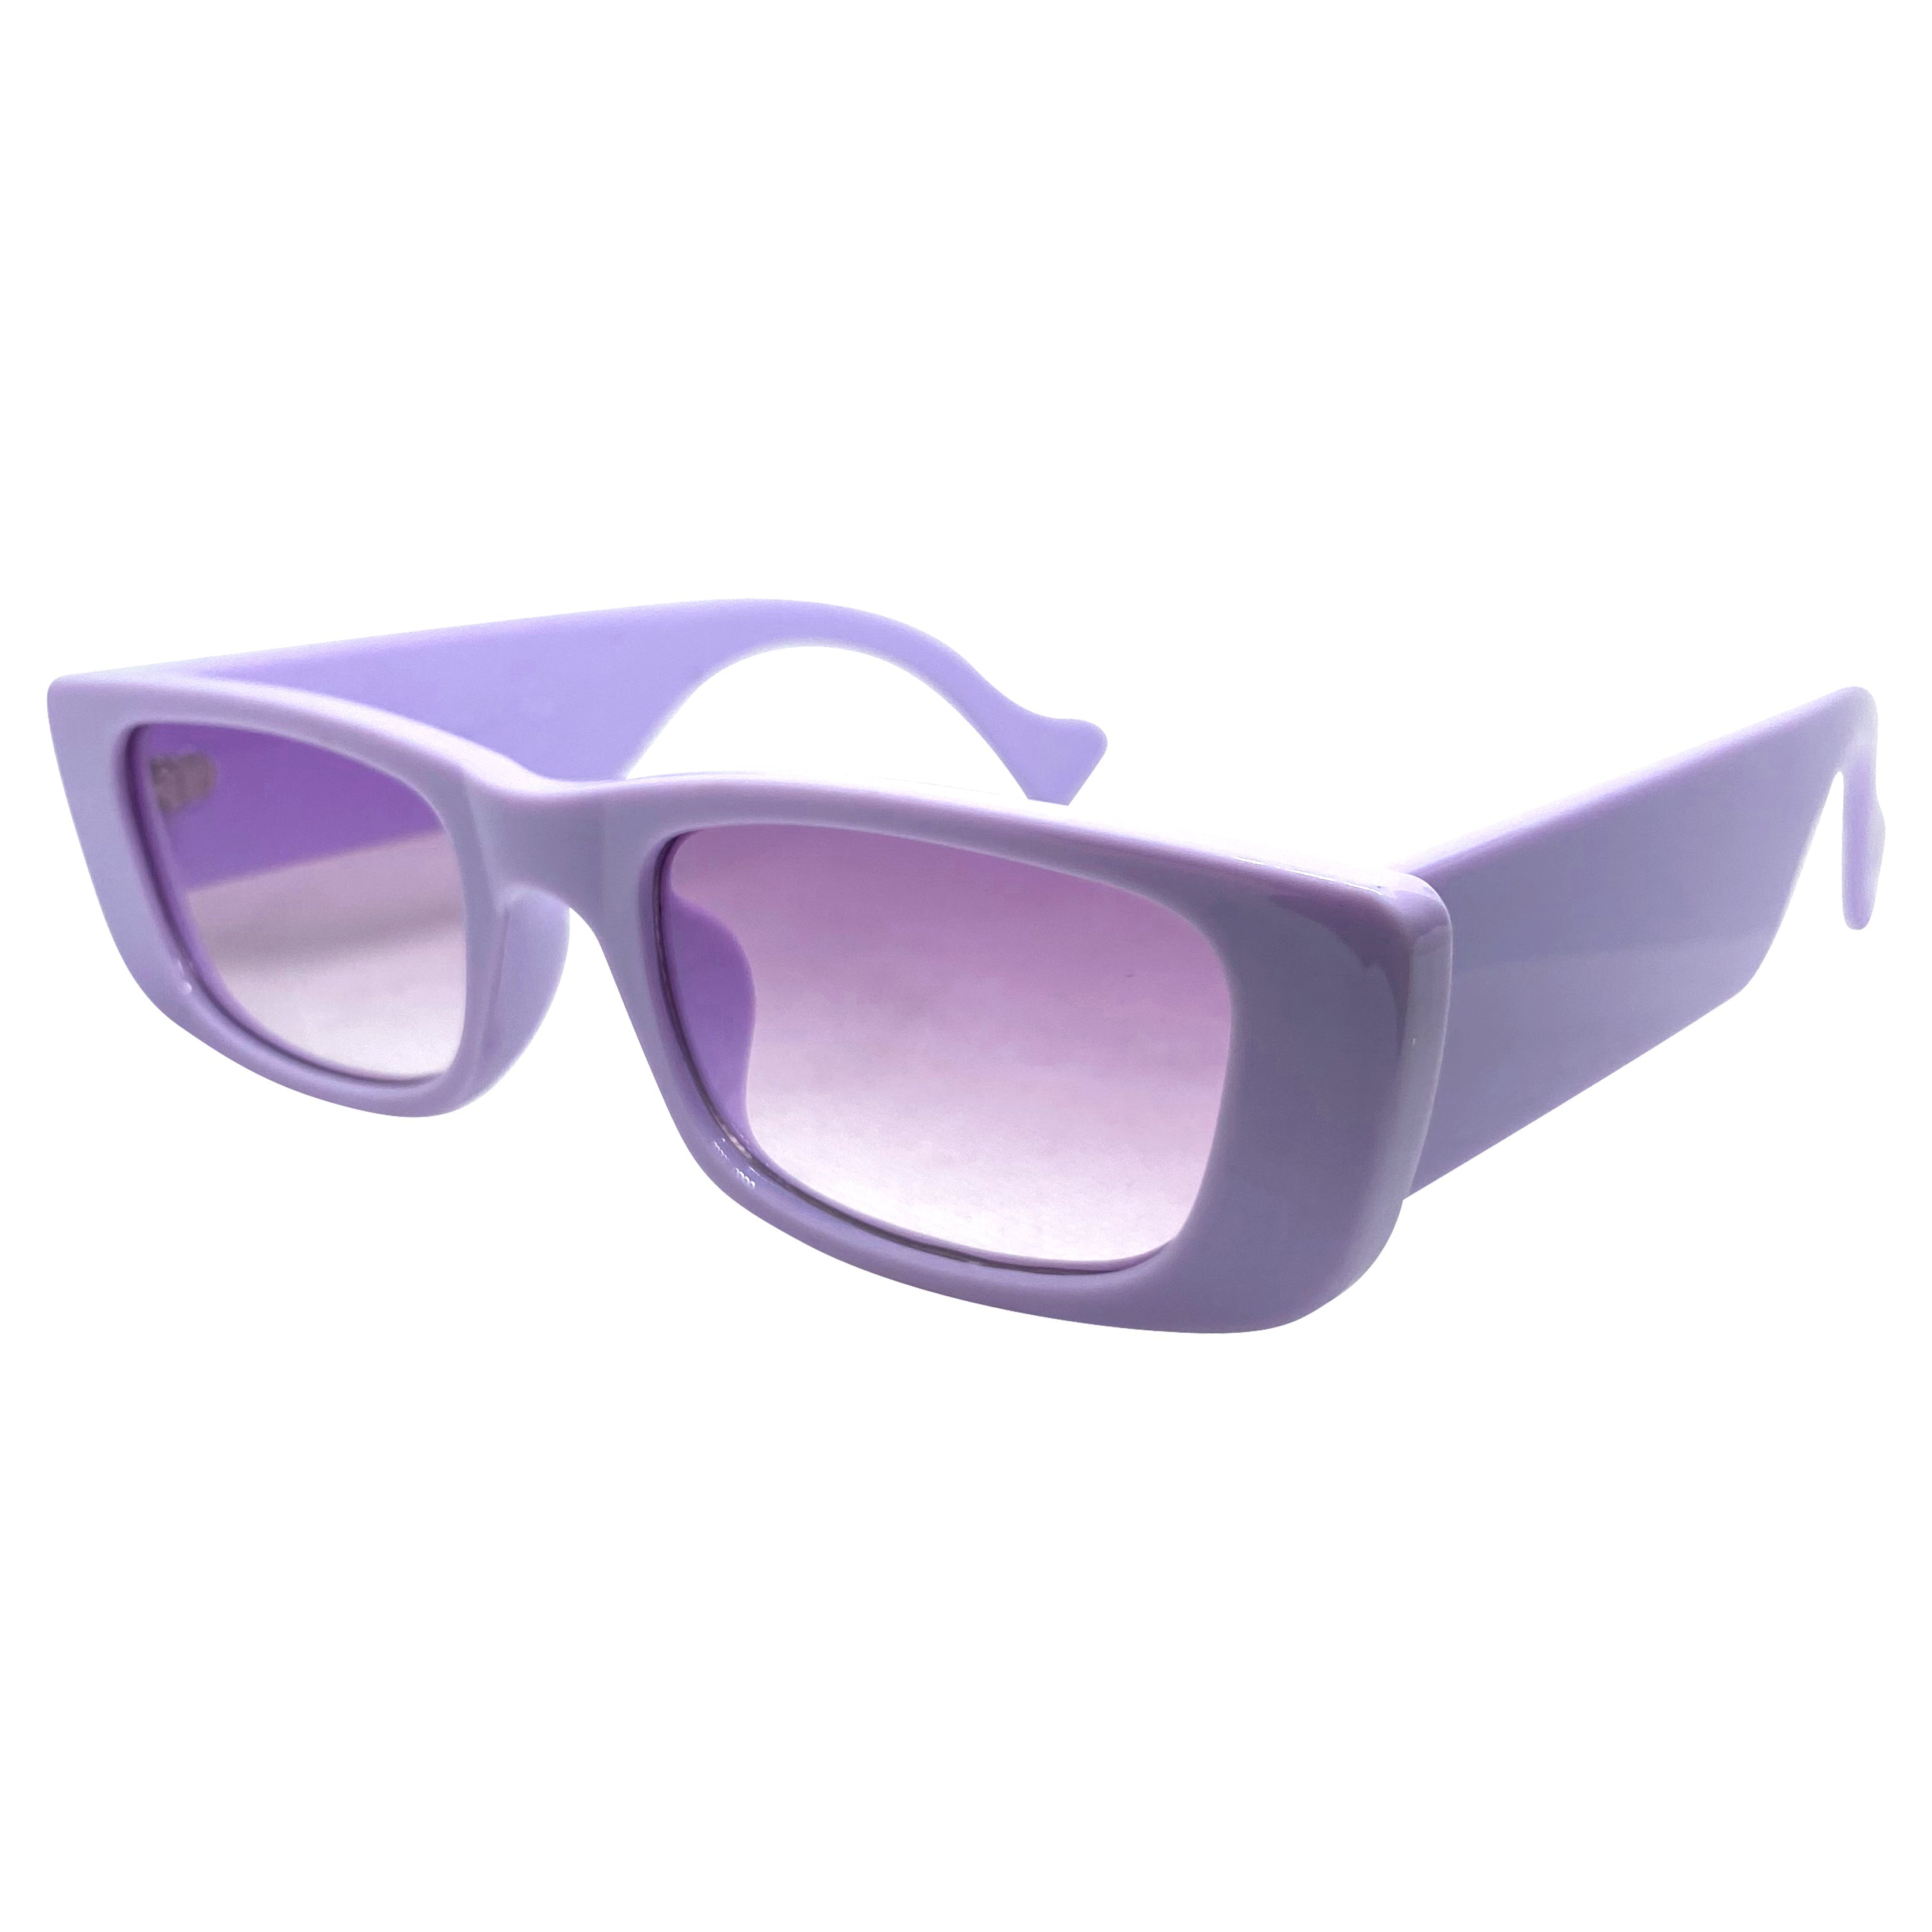 Saint Laurent Rectangular Sunglasses SL553 001 - Laneway Boutique